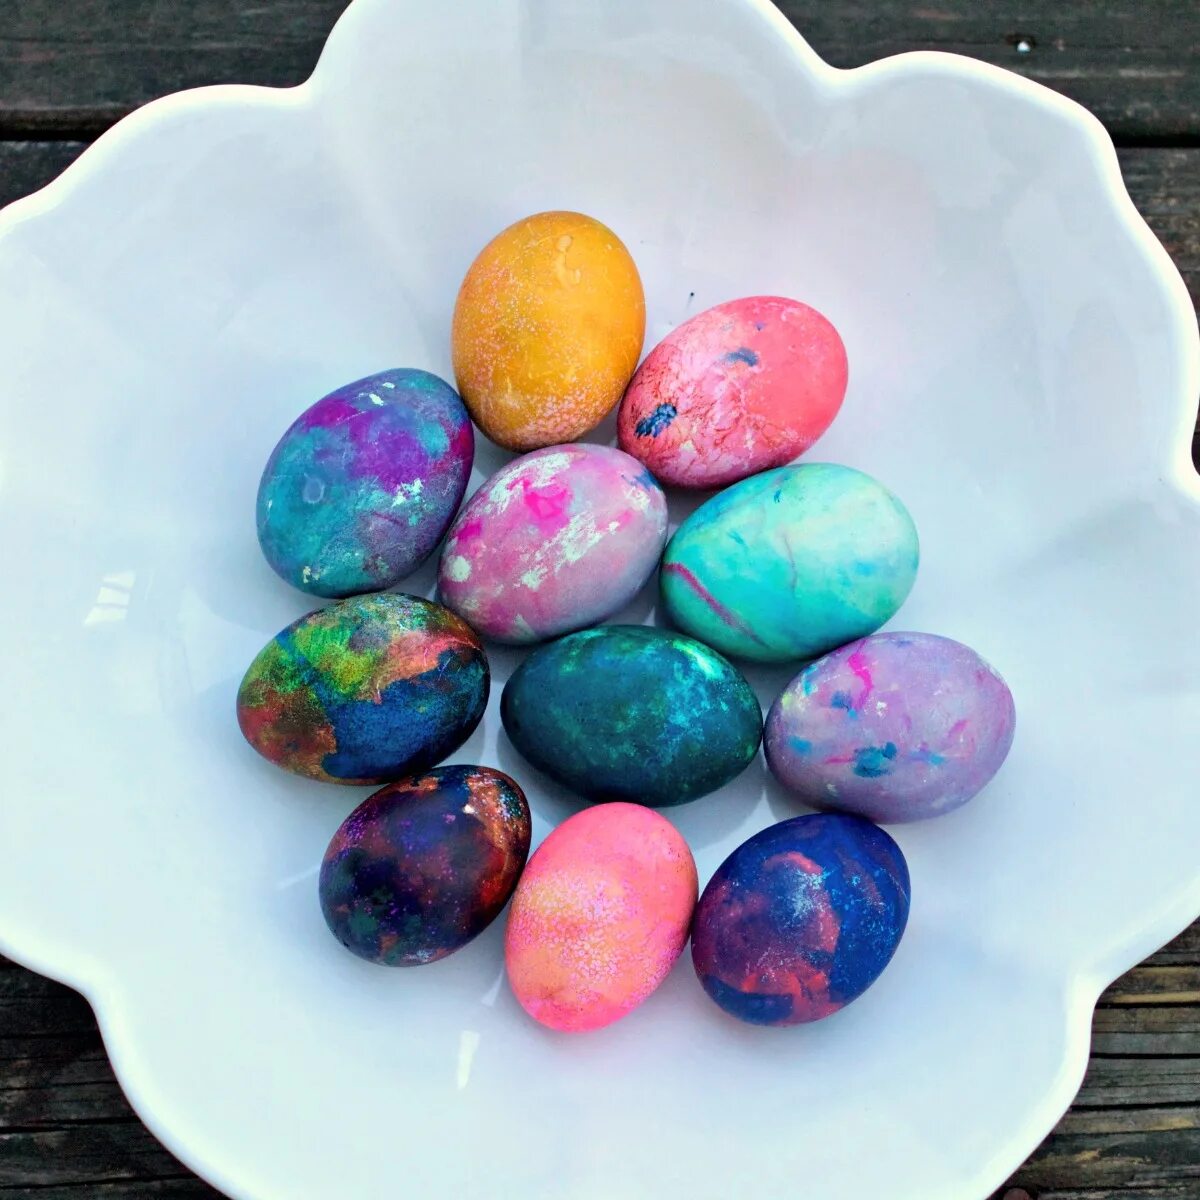 Как красить яйца пищевым красителем. Окрашивание яиц. Окрашивание яиц пищевыми красителями. Красим яйца пищевыми красителями. Крашение яиц пищевыми красителями.